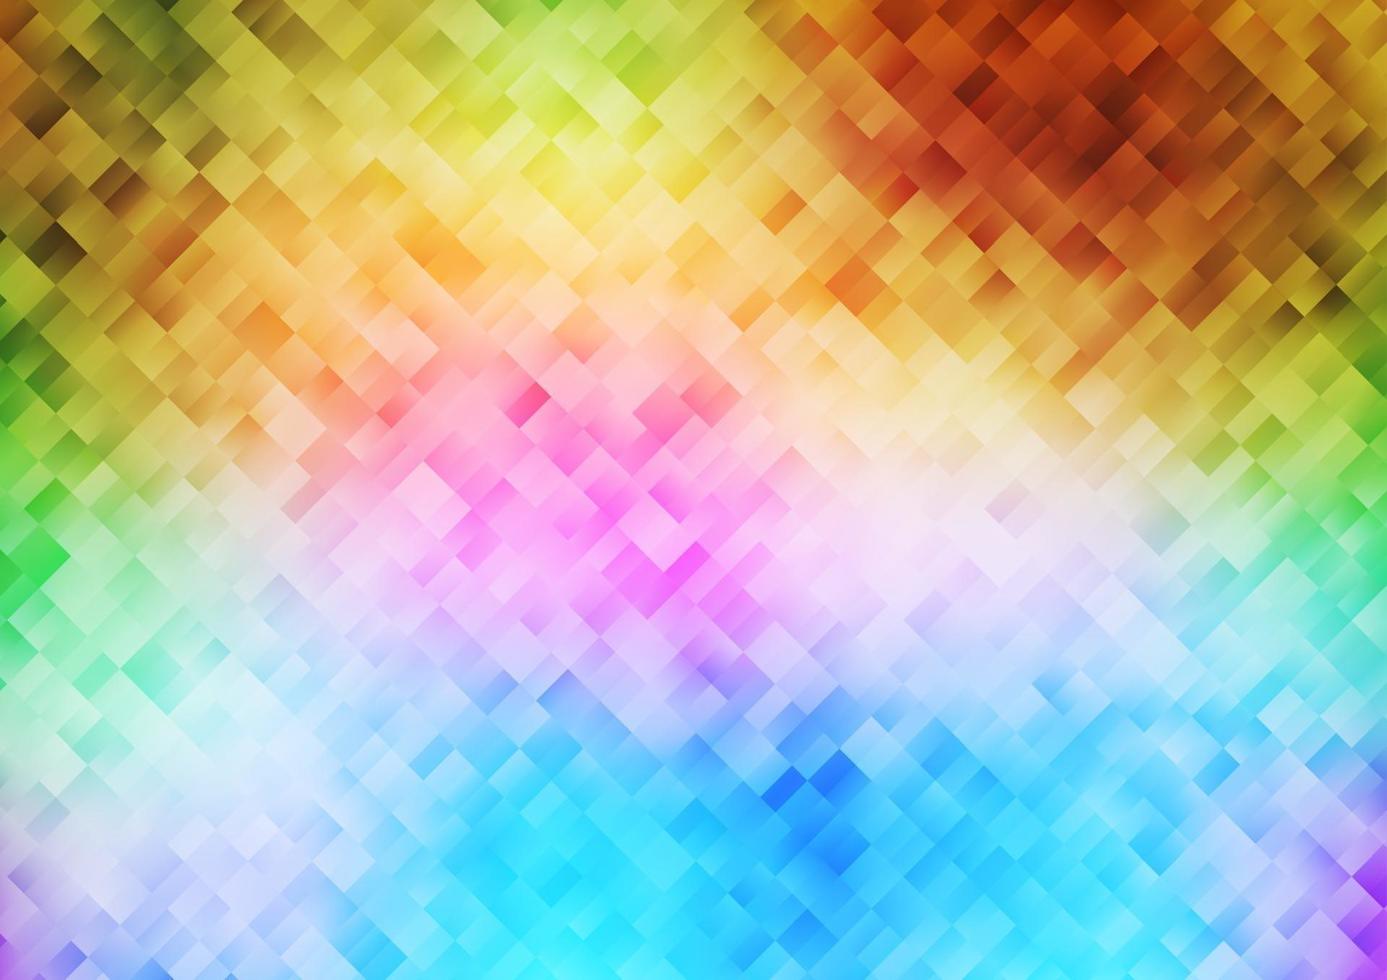 multicolore chiaro, copertina vettoriale arcobaleno in stile poligonale.